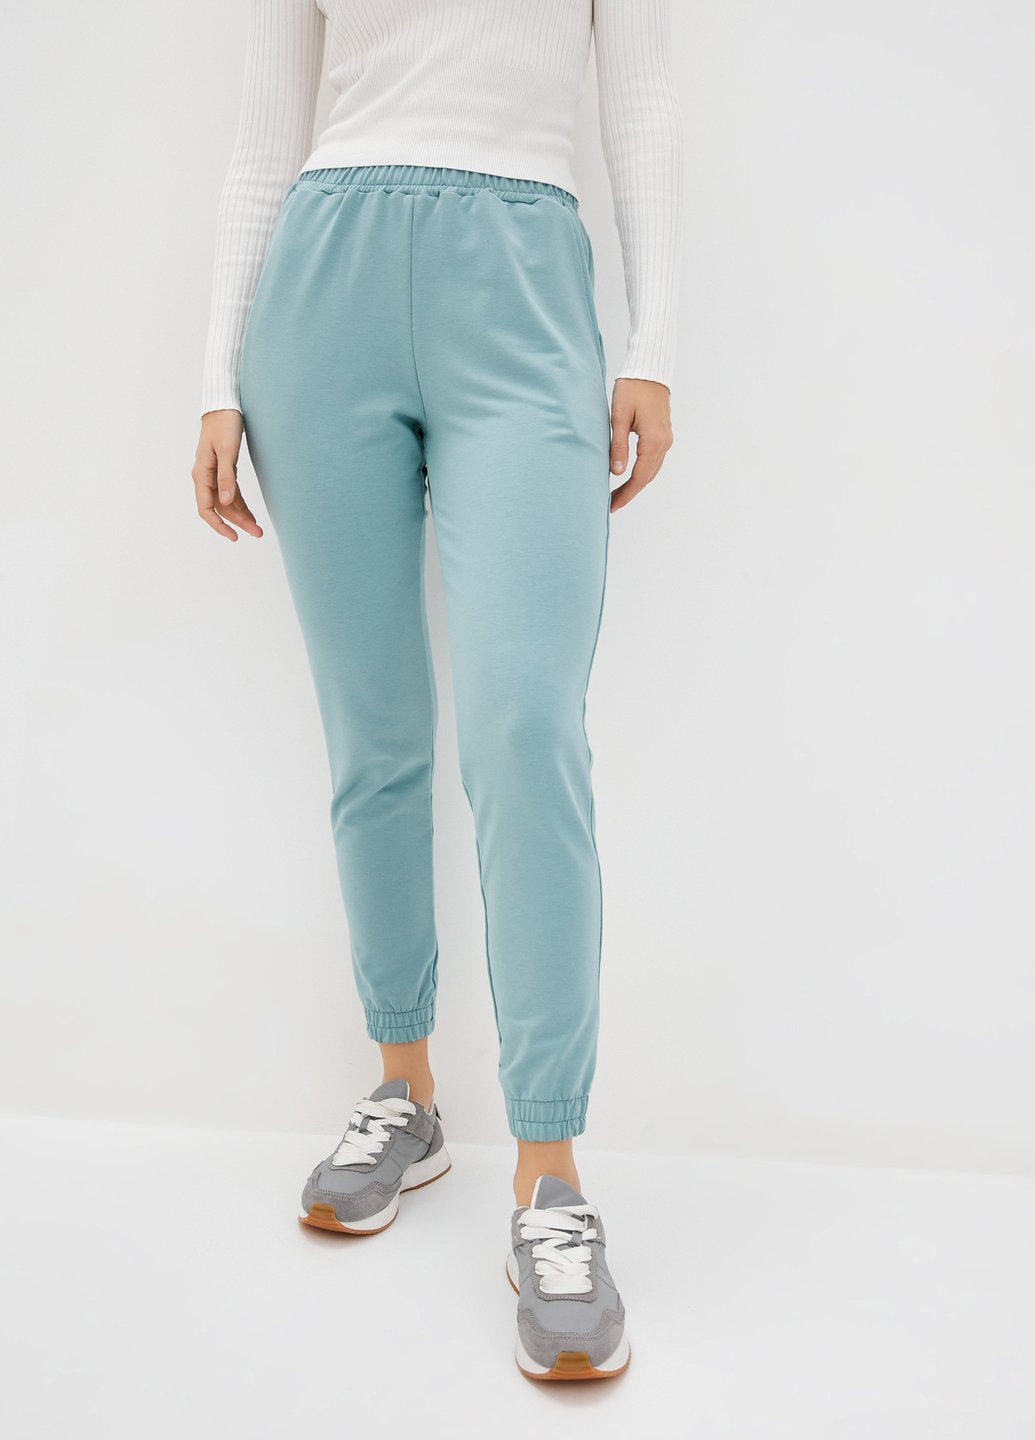 Купить Спортивные штаны женские Merlini Сити 600000060 - Зелёный, 42-44 в интернет-магазине